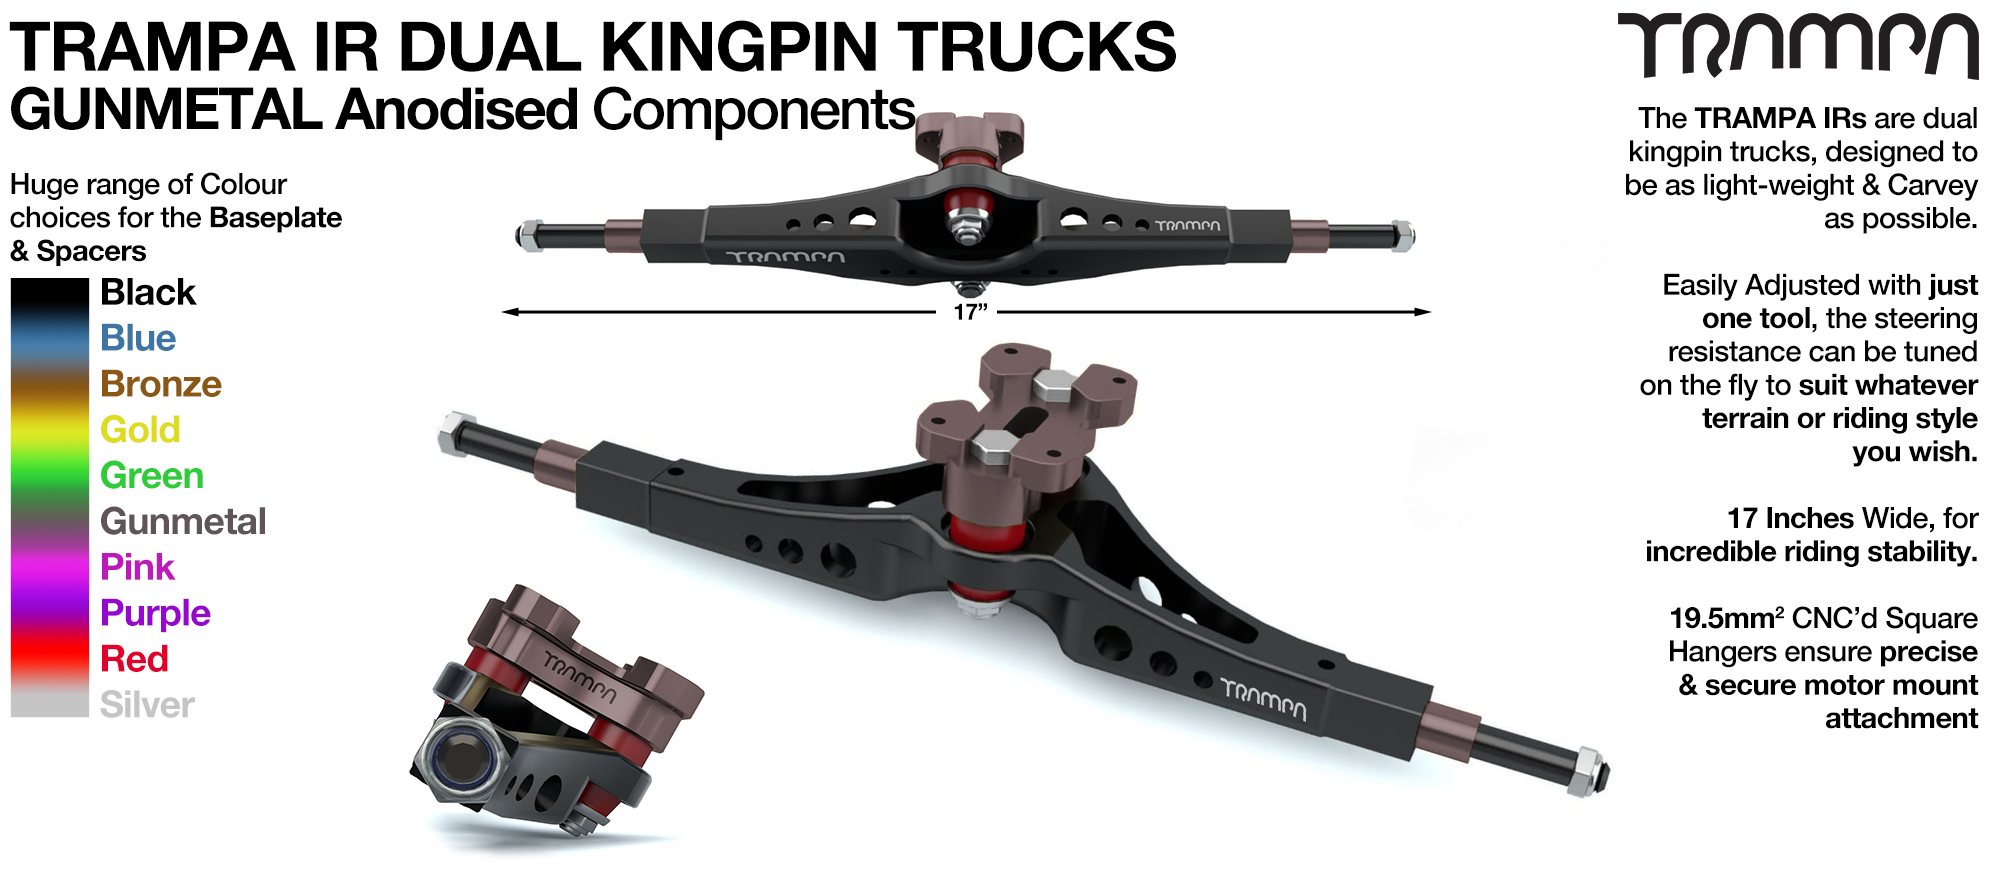 TRAMPA IR Double Kingpinned Skate Style Trucks fit every 19.1mm Motor Mount TRAMPA offers - GUNMETAL